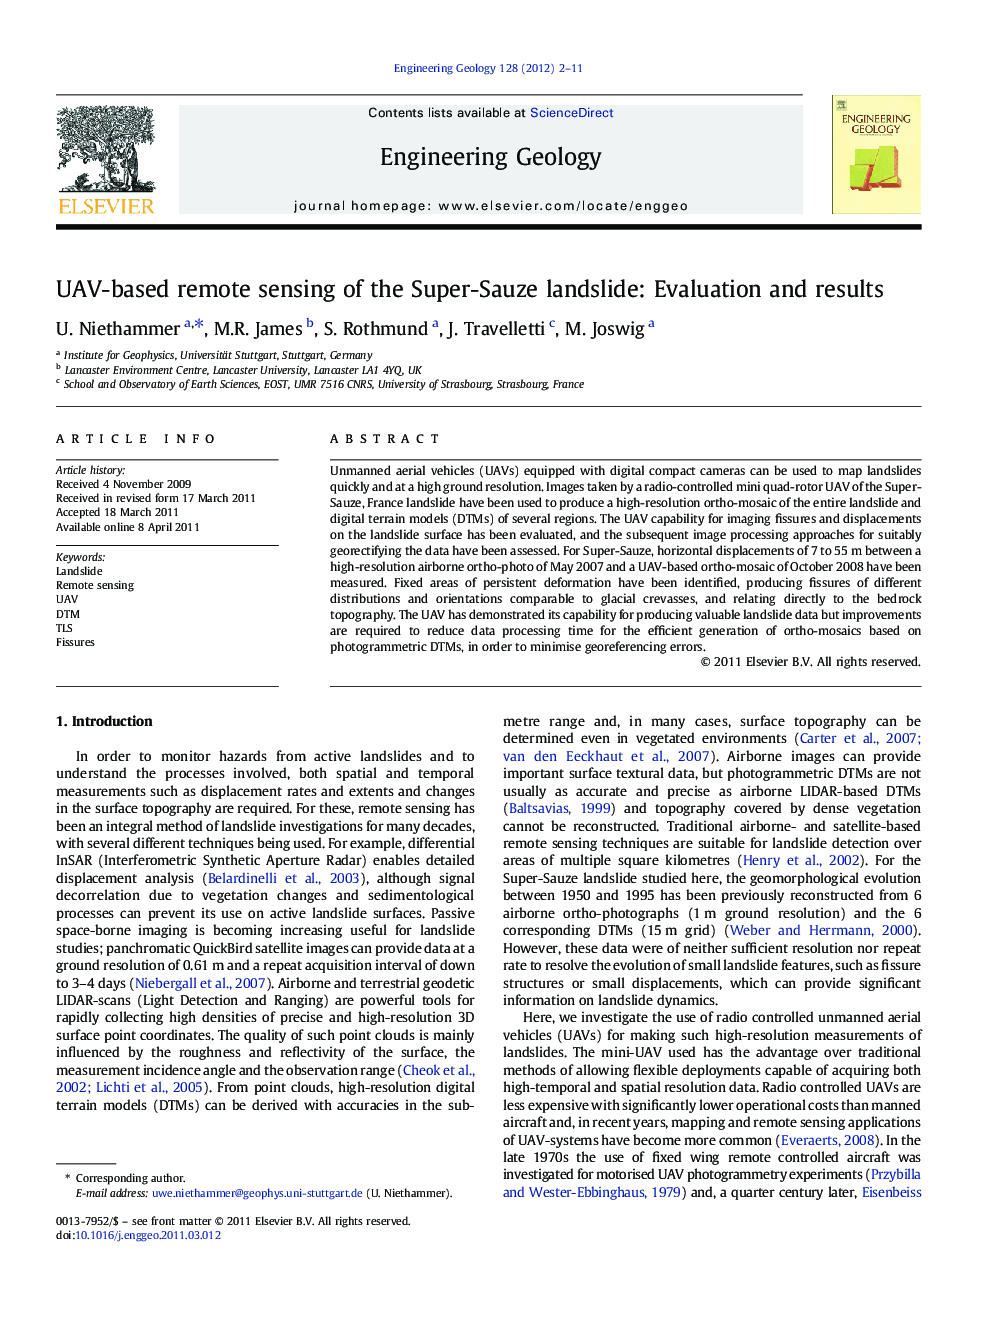 UAV-based remote sensing of the Super-Sauze landslide: Evaluation and results